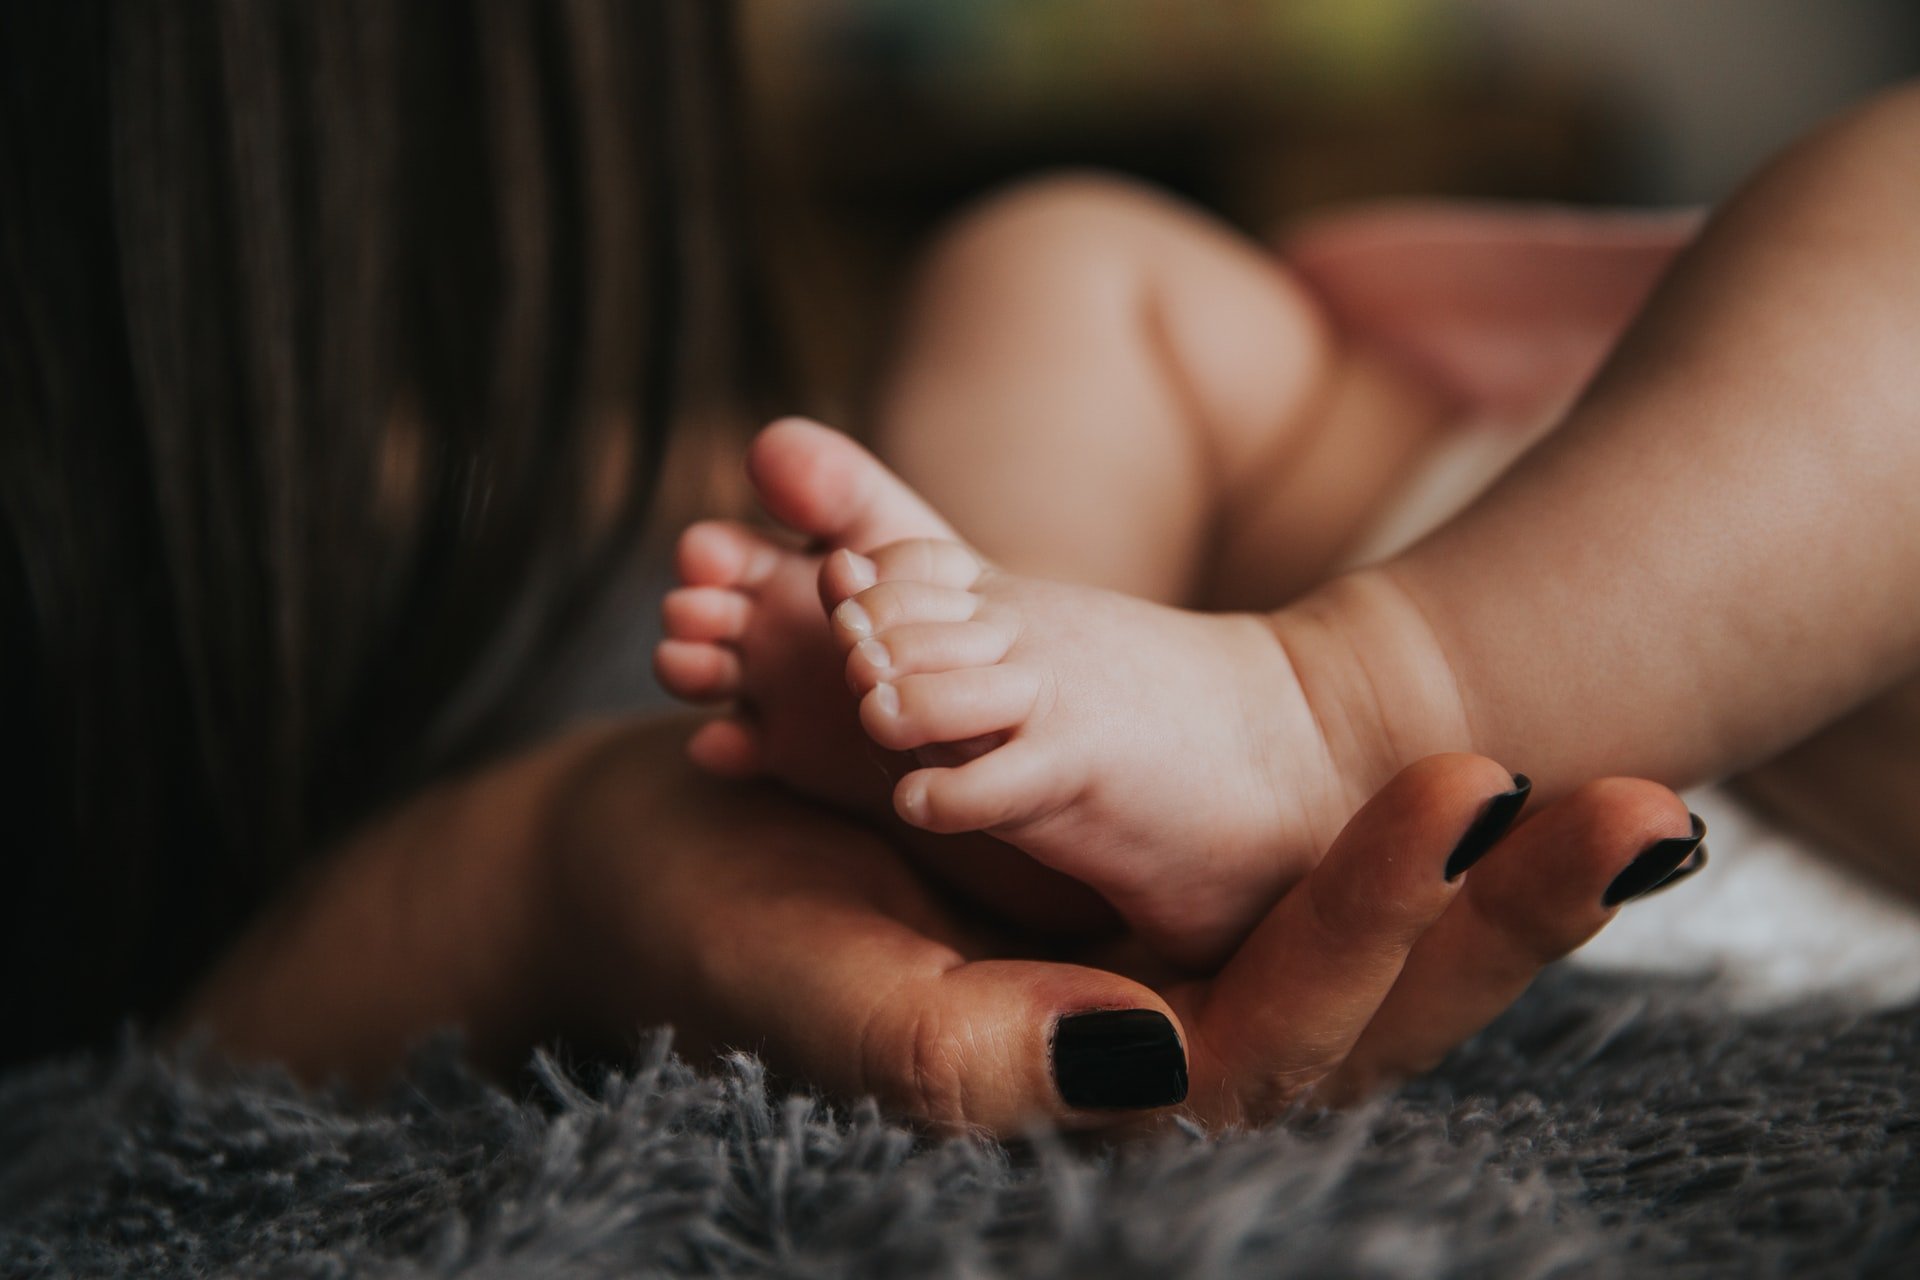 La femme cherchait une baby-sitter pour son enfant | Source : Unsplash